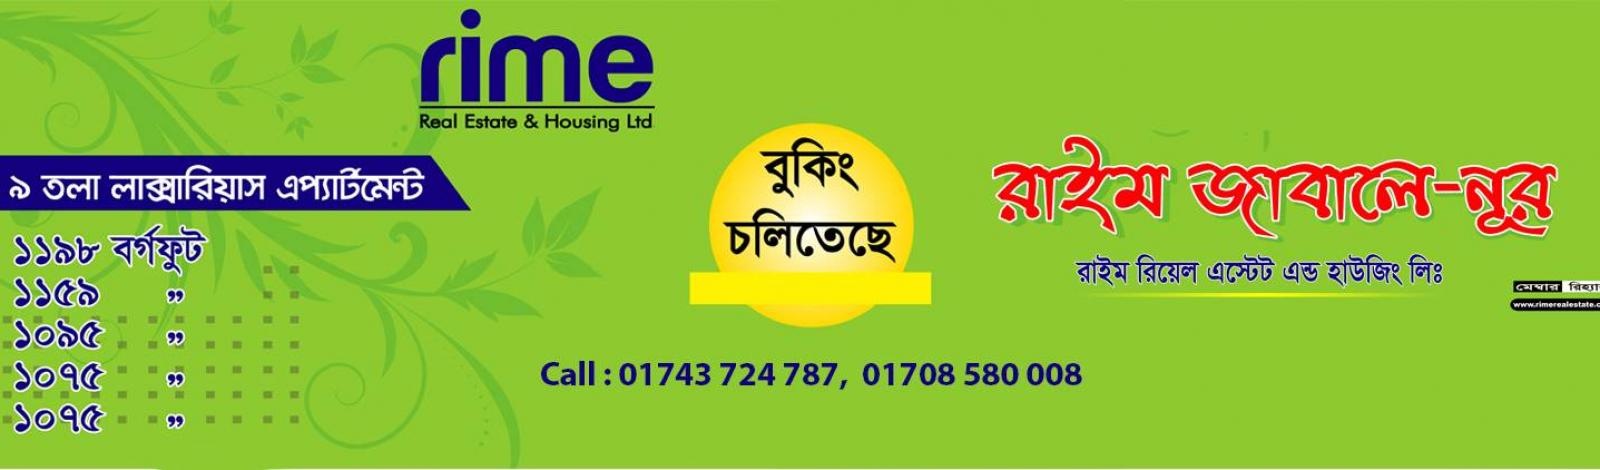 Rime Real Estate & Housing Ltd banner